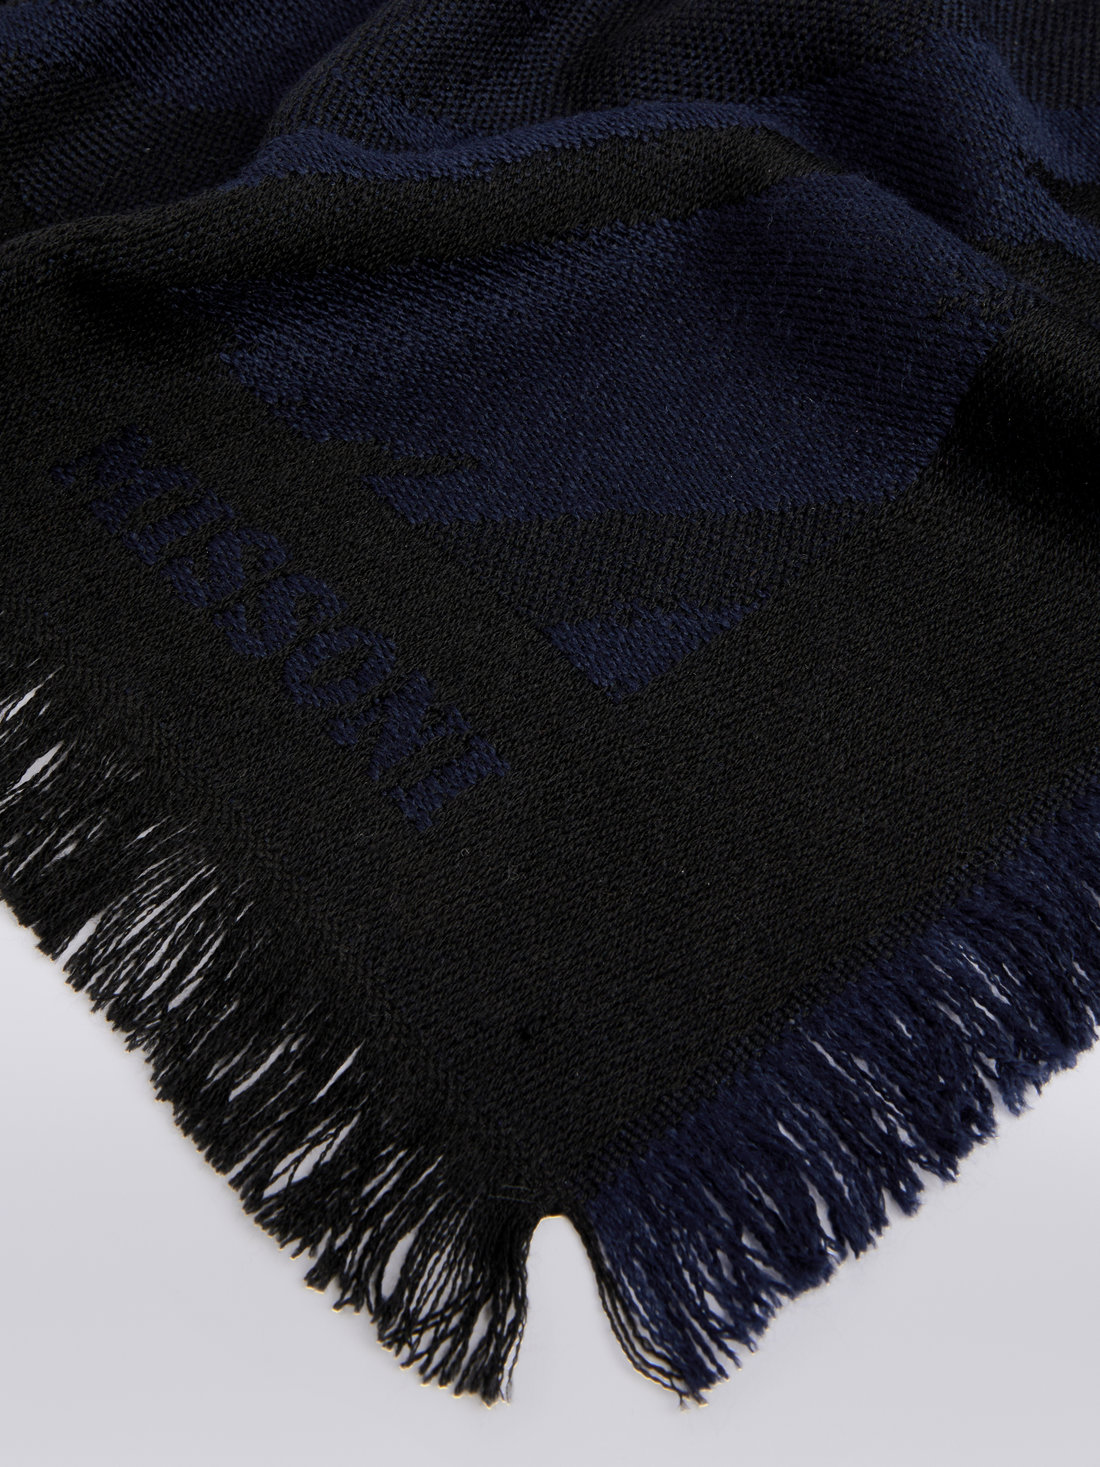 Scialle in lana fiammata con bordi sfrangiati, Multicolore  - 8053147023311 - 1